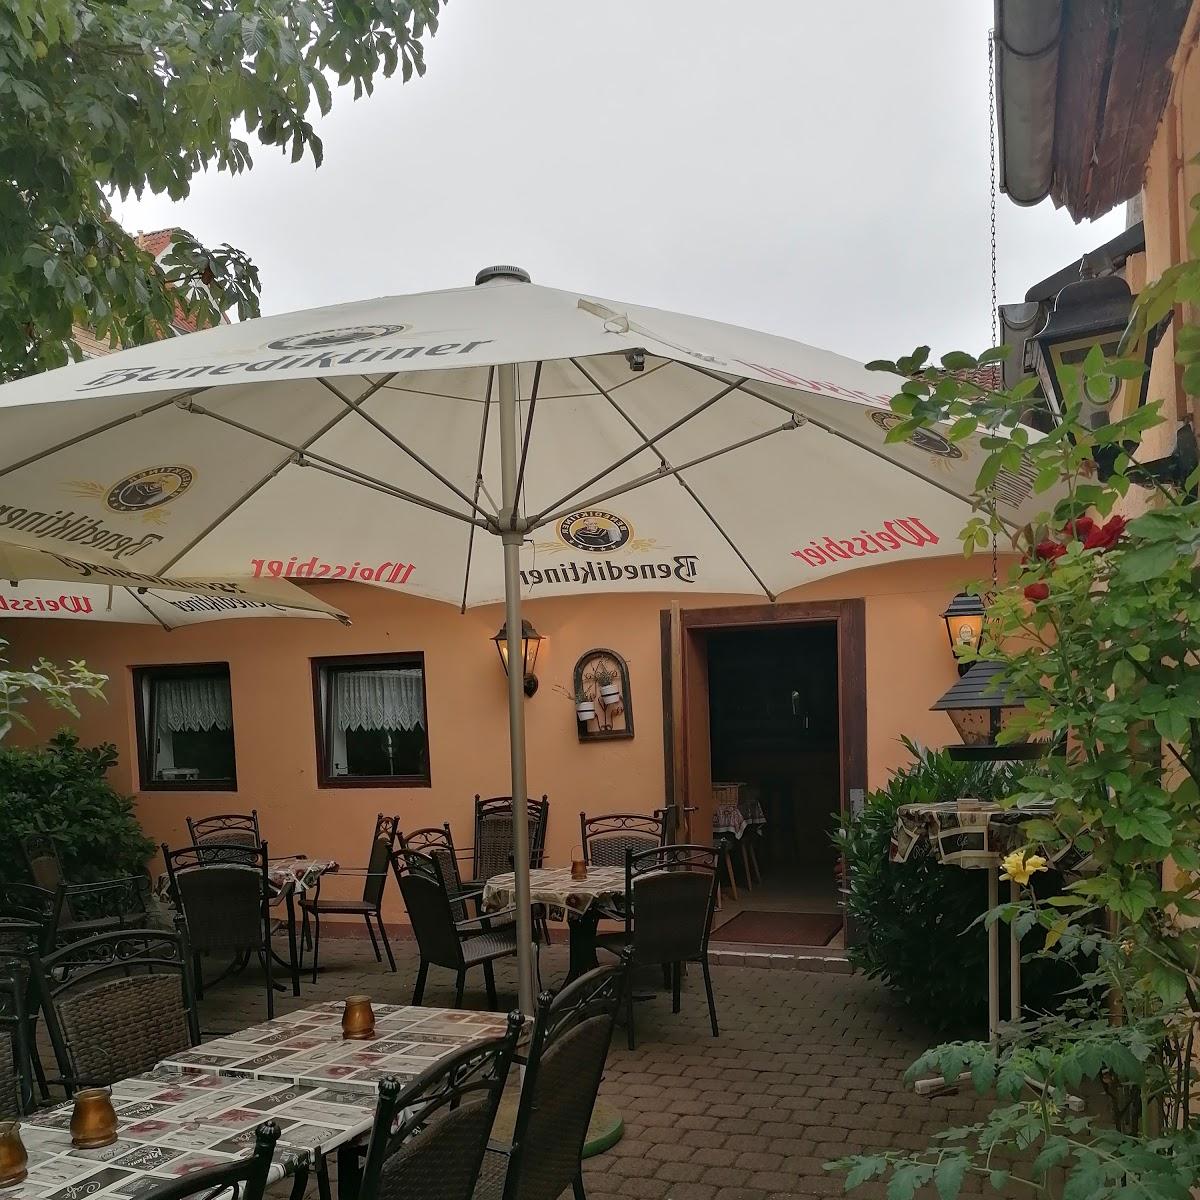 Restaurant "Zum Adler" in Karben